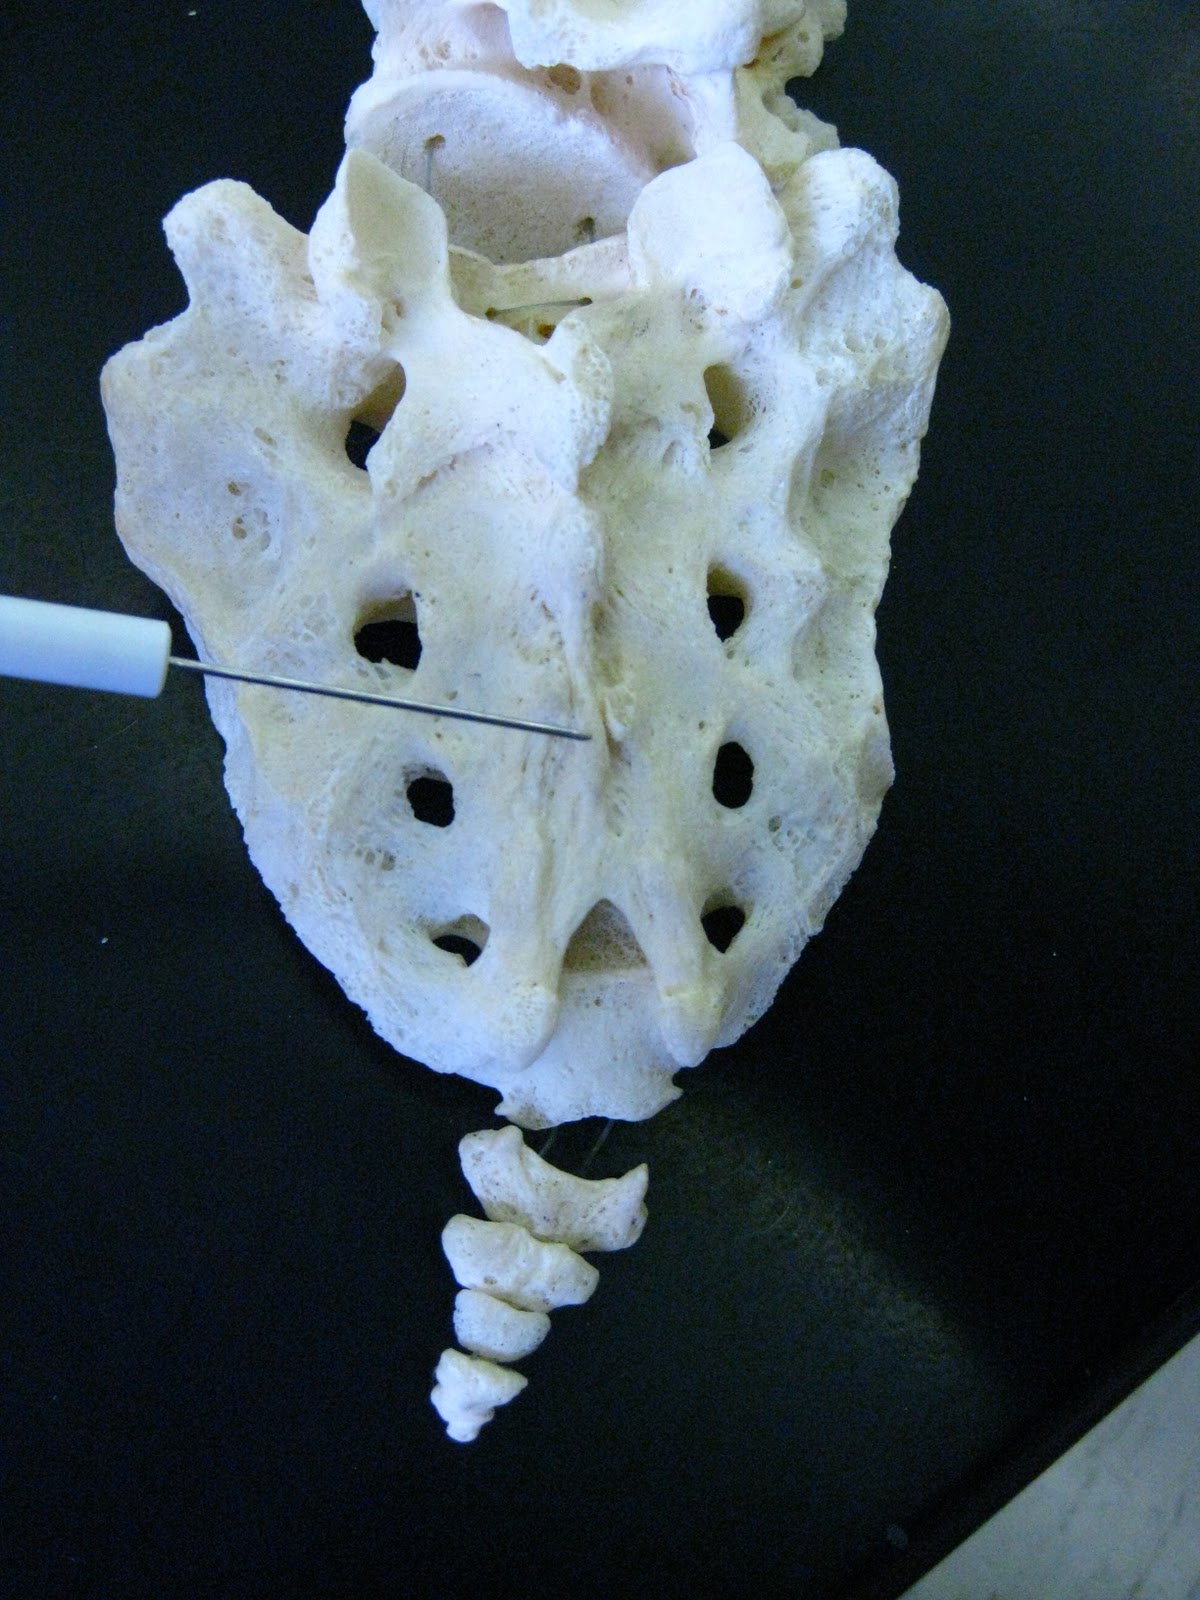 Boned: Human Skeleton - sacrum